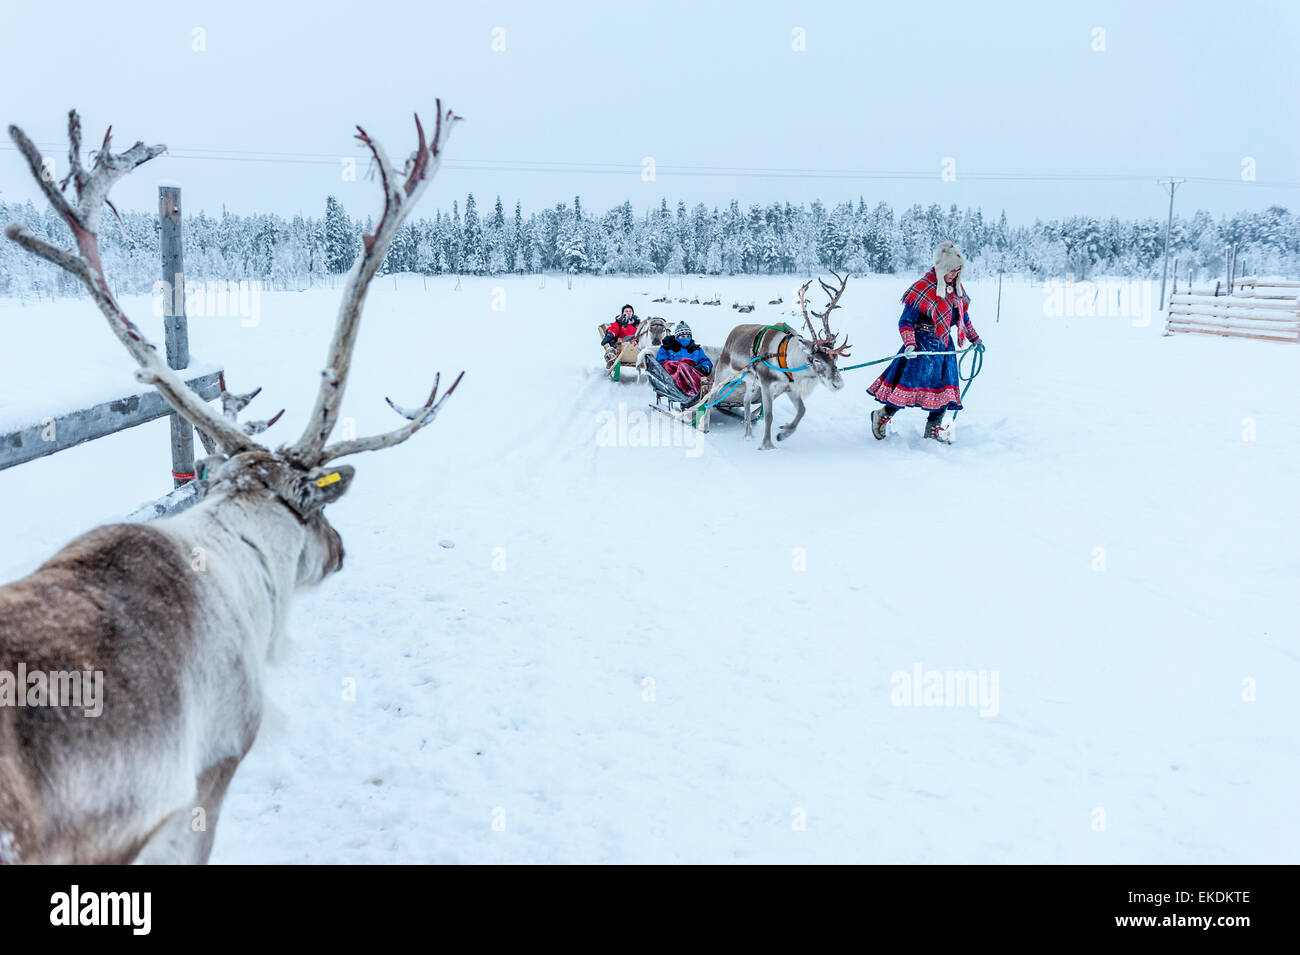 Élevage de rennes et en traîneau. Levi. La Laponie. La Finlande. Scandinavie Banque D'Images